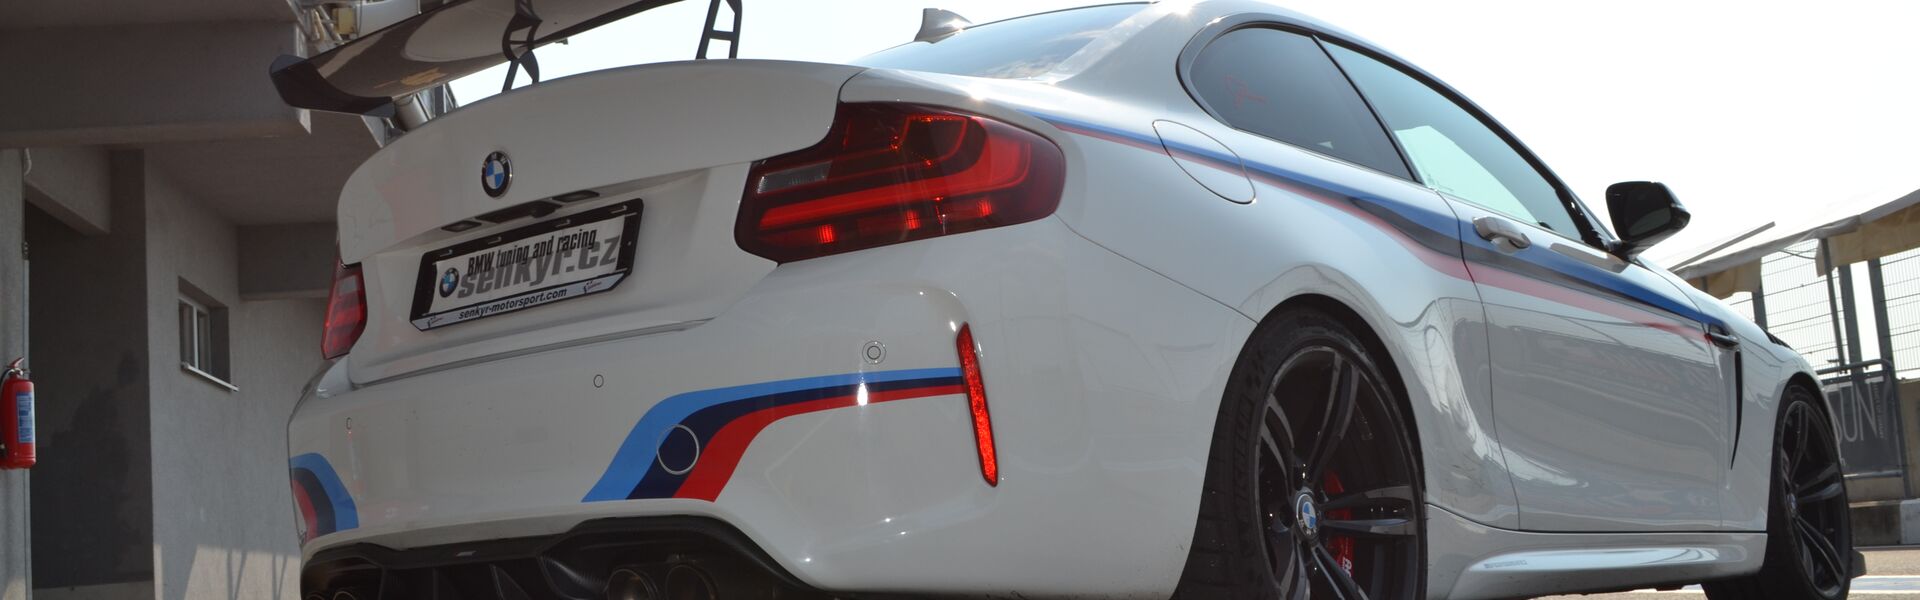 Bodykit/ Aerodynamické prvky pro automobil BMW 435i F32